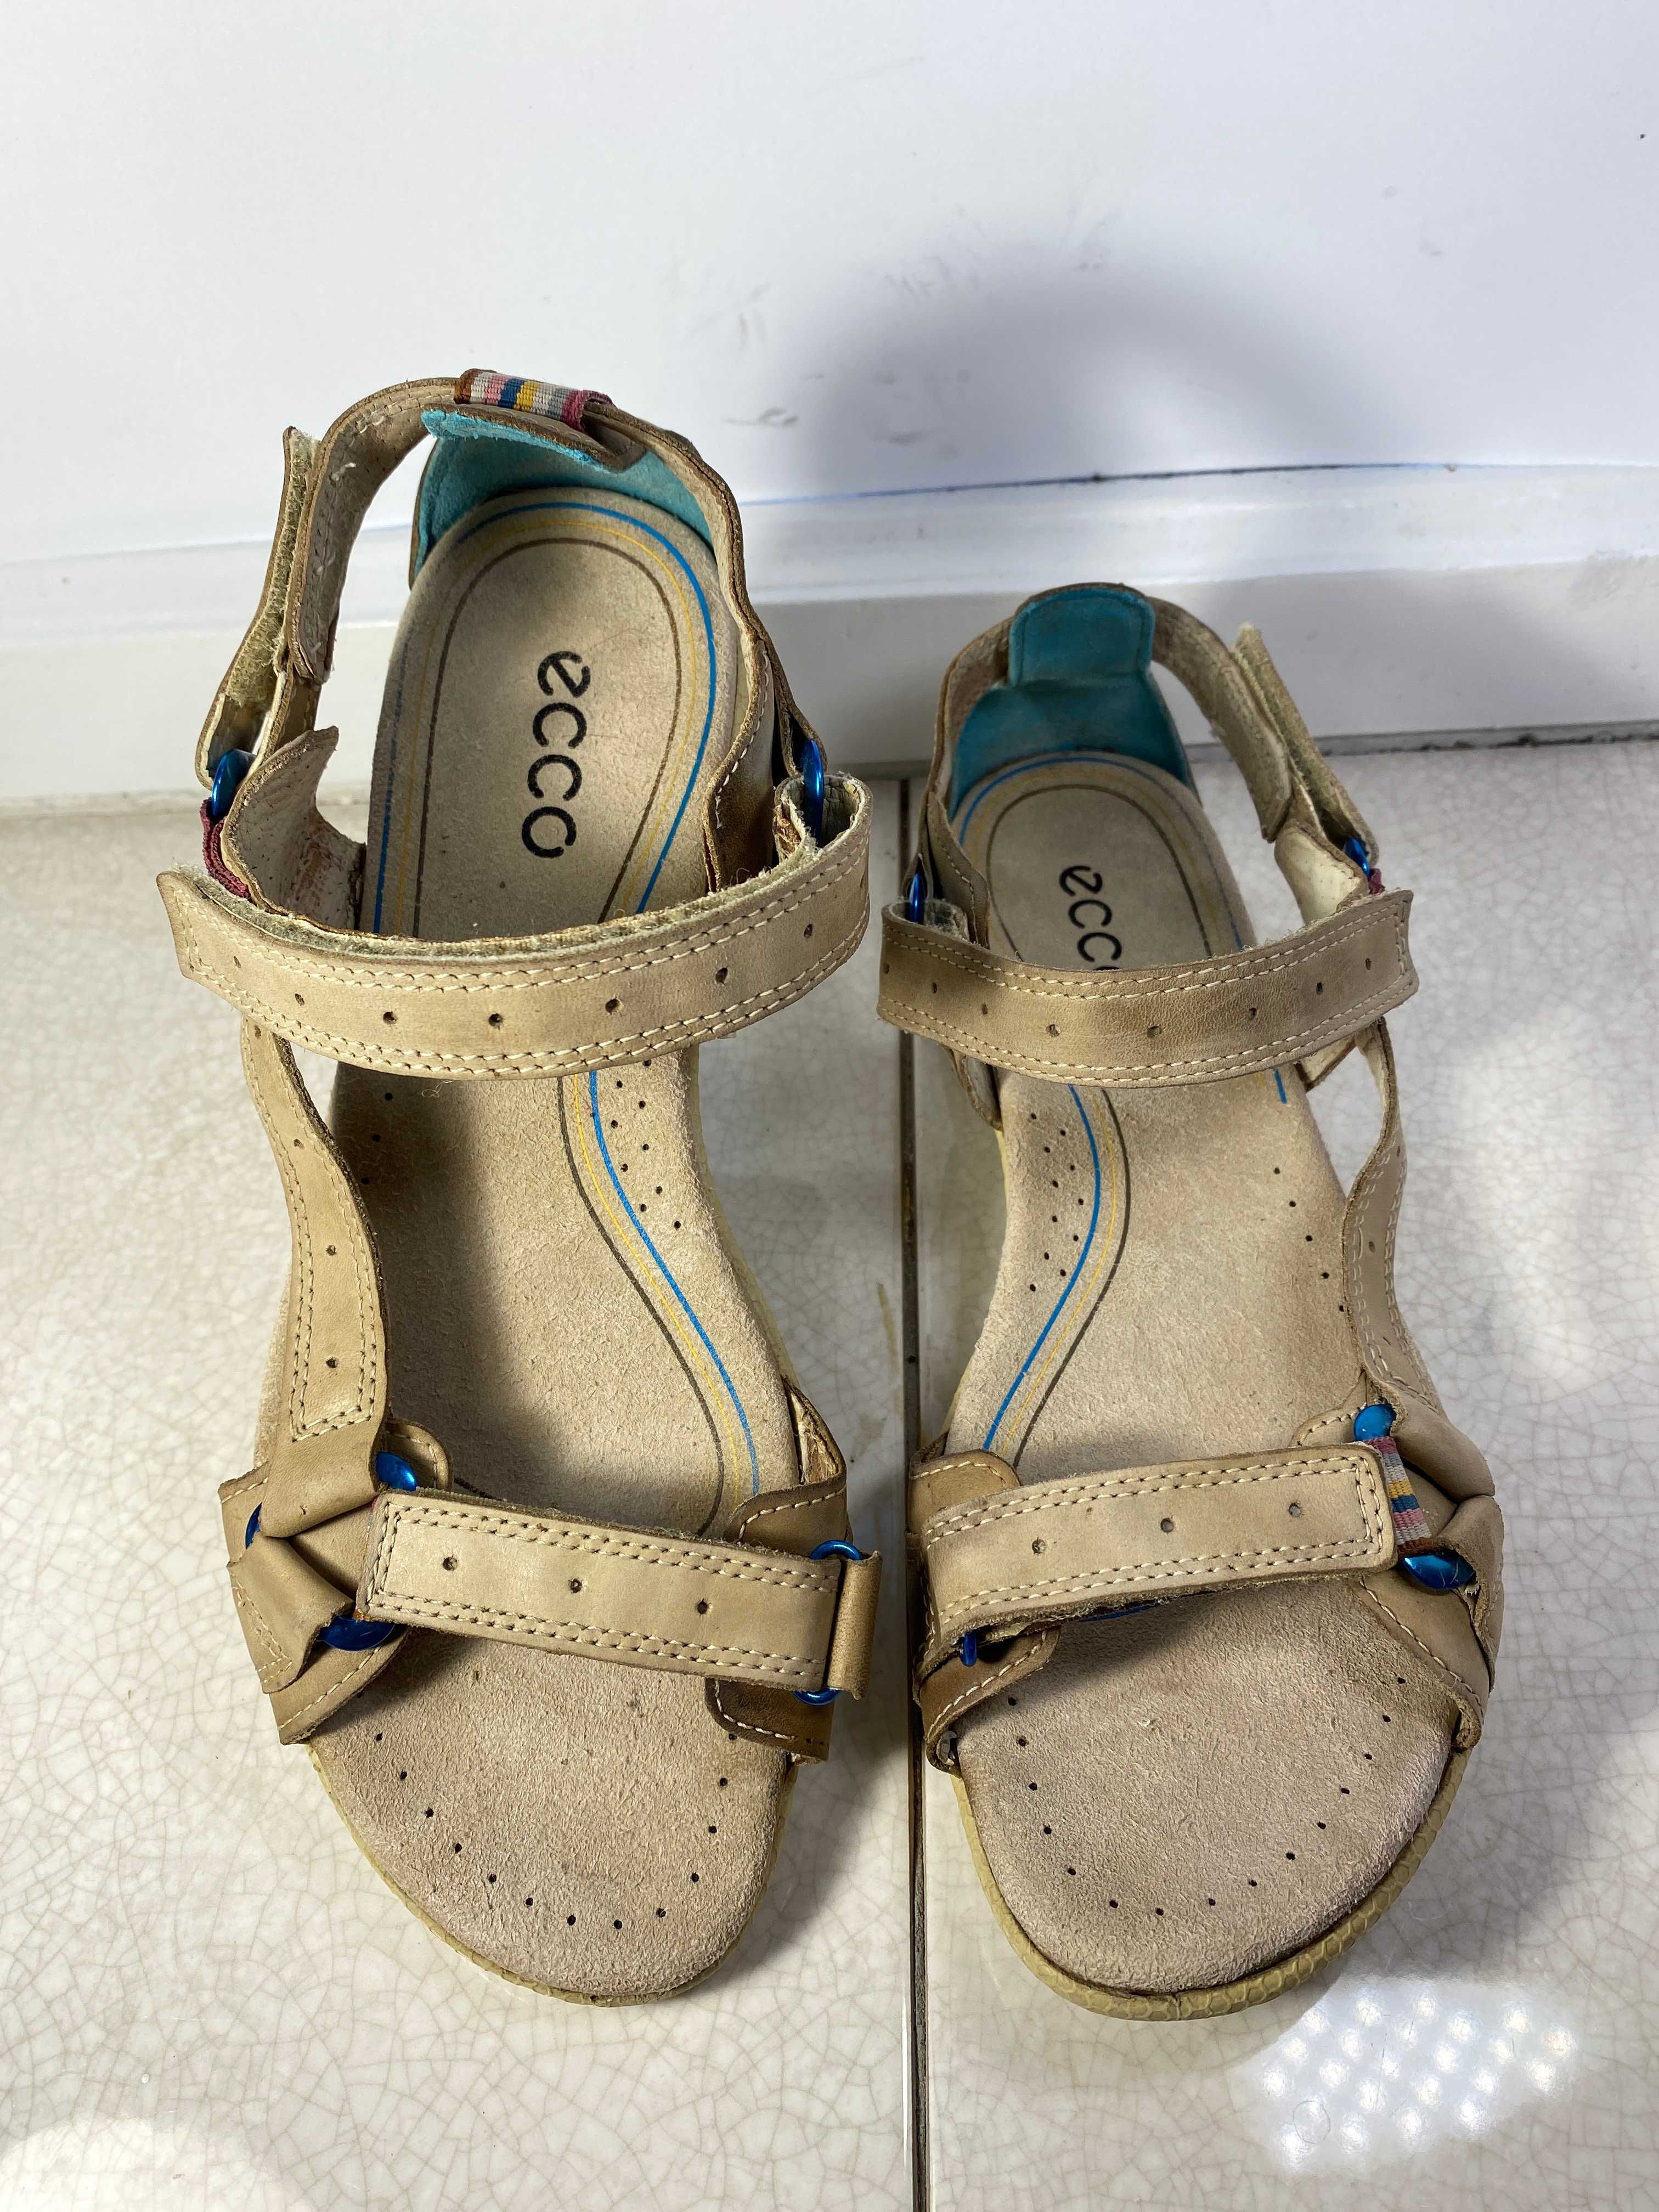 38 р. ECCO босоножки сандалии женские кожаные 24 см оригинал